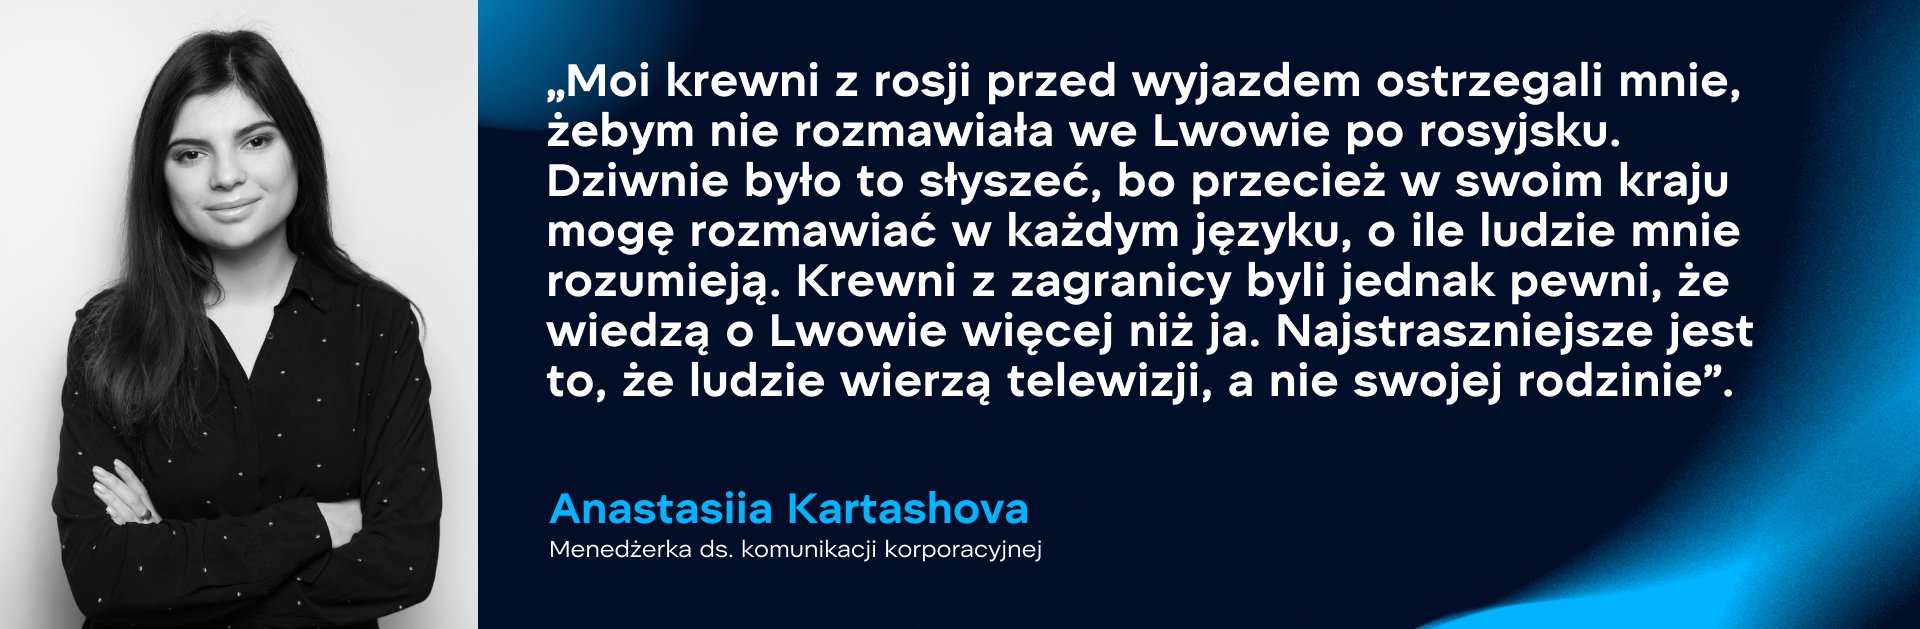 Anastasiia Kartashova, menedżerka ds. komunikacji korporacyjnej. Zdjęcie: WePlay Holding